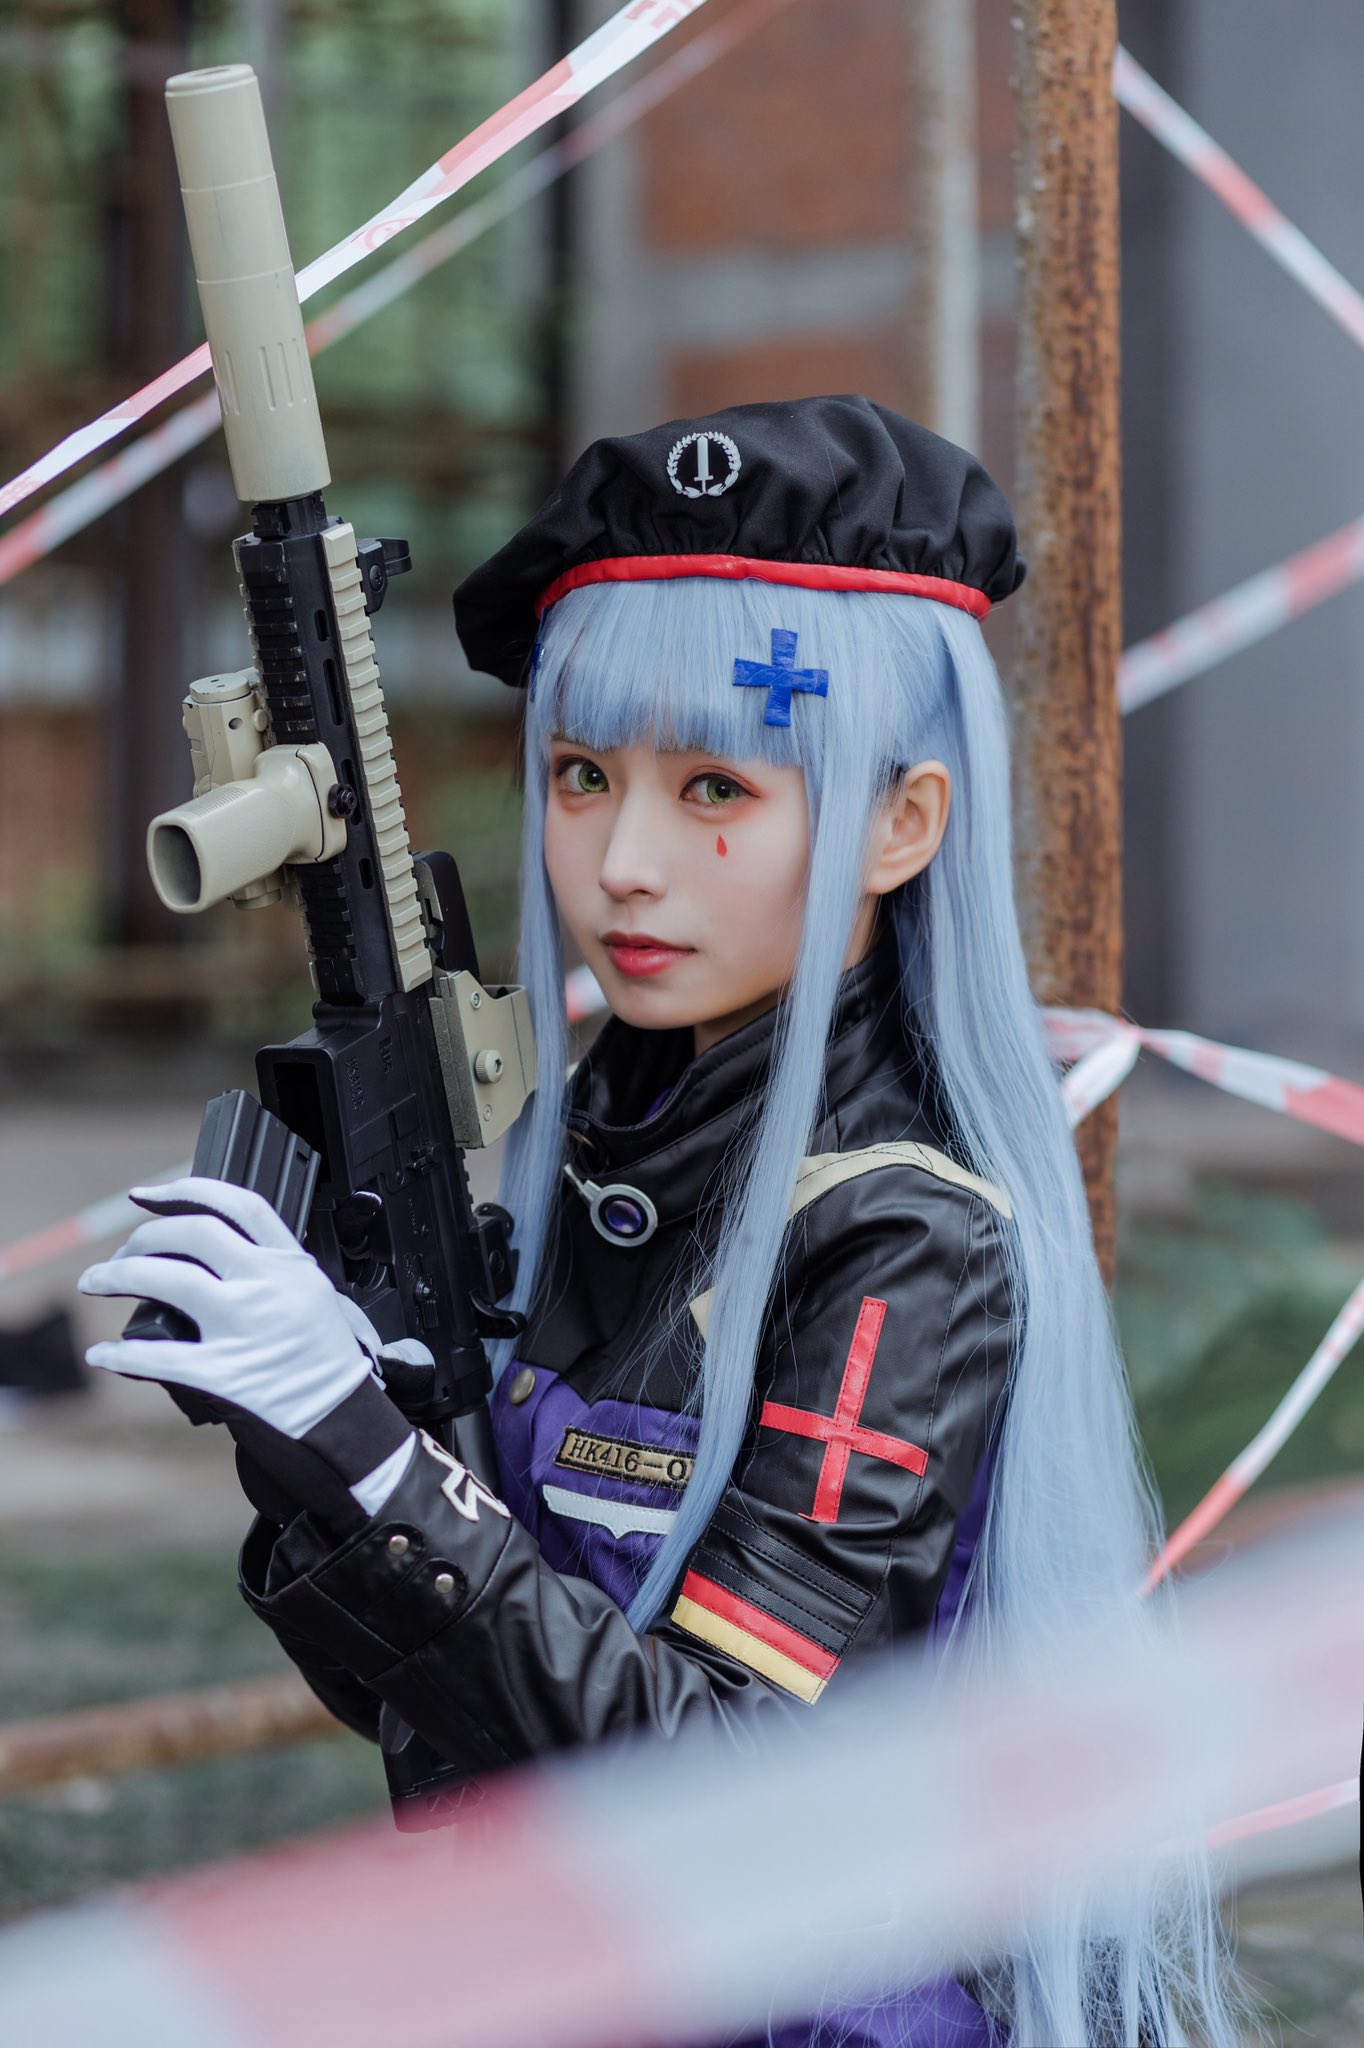 画像,指挥官，有我在就足够了。HK416 cos💗#少女前線 #少女前线 #GirlsFrontline #cosplay https://t.co/9sn28HEk…